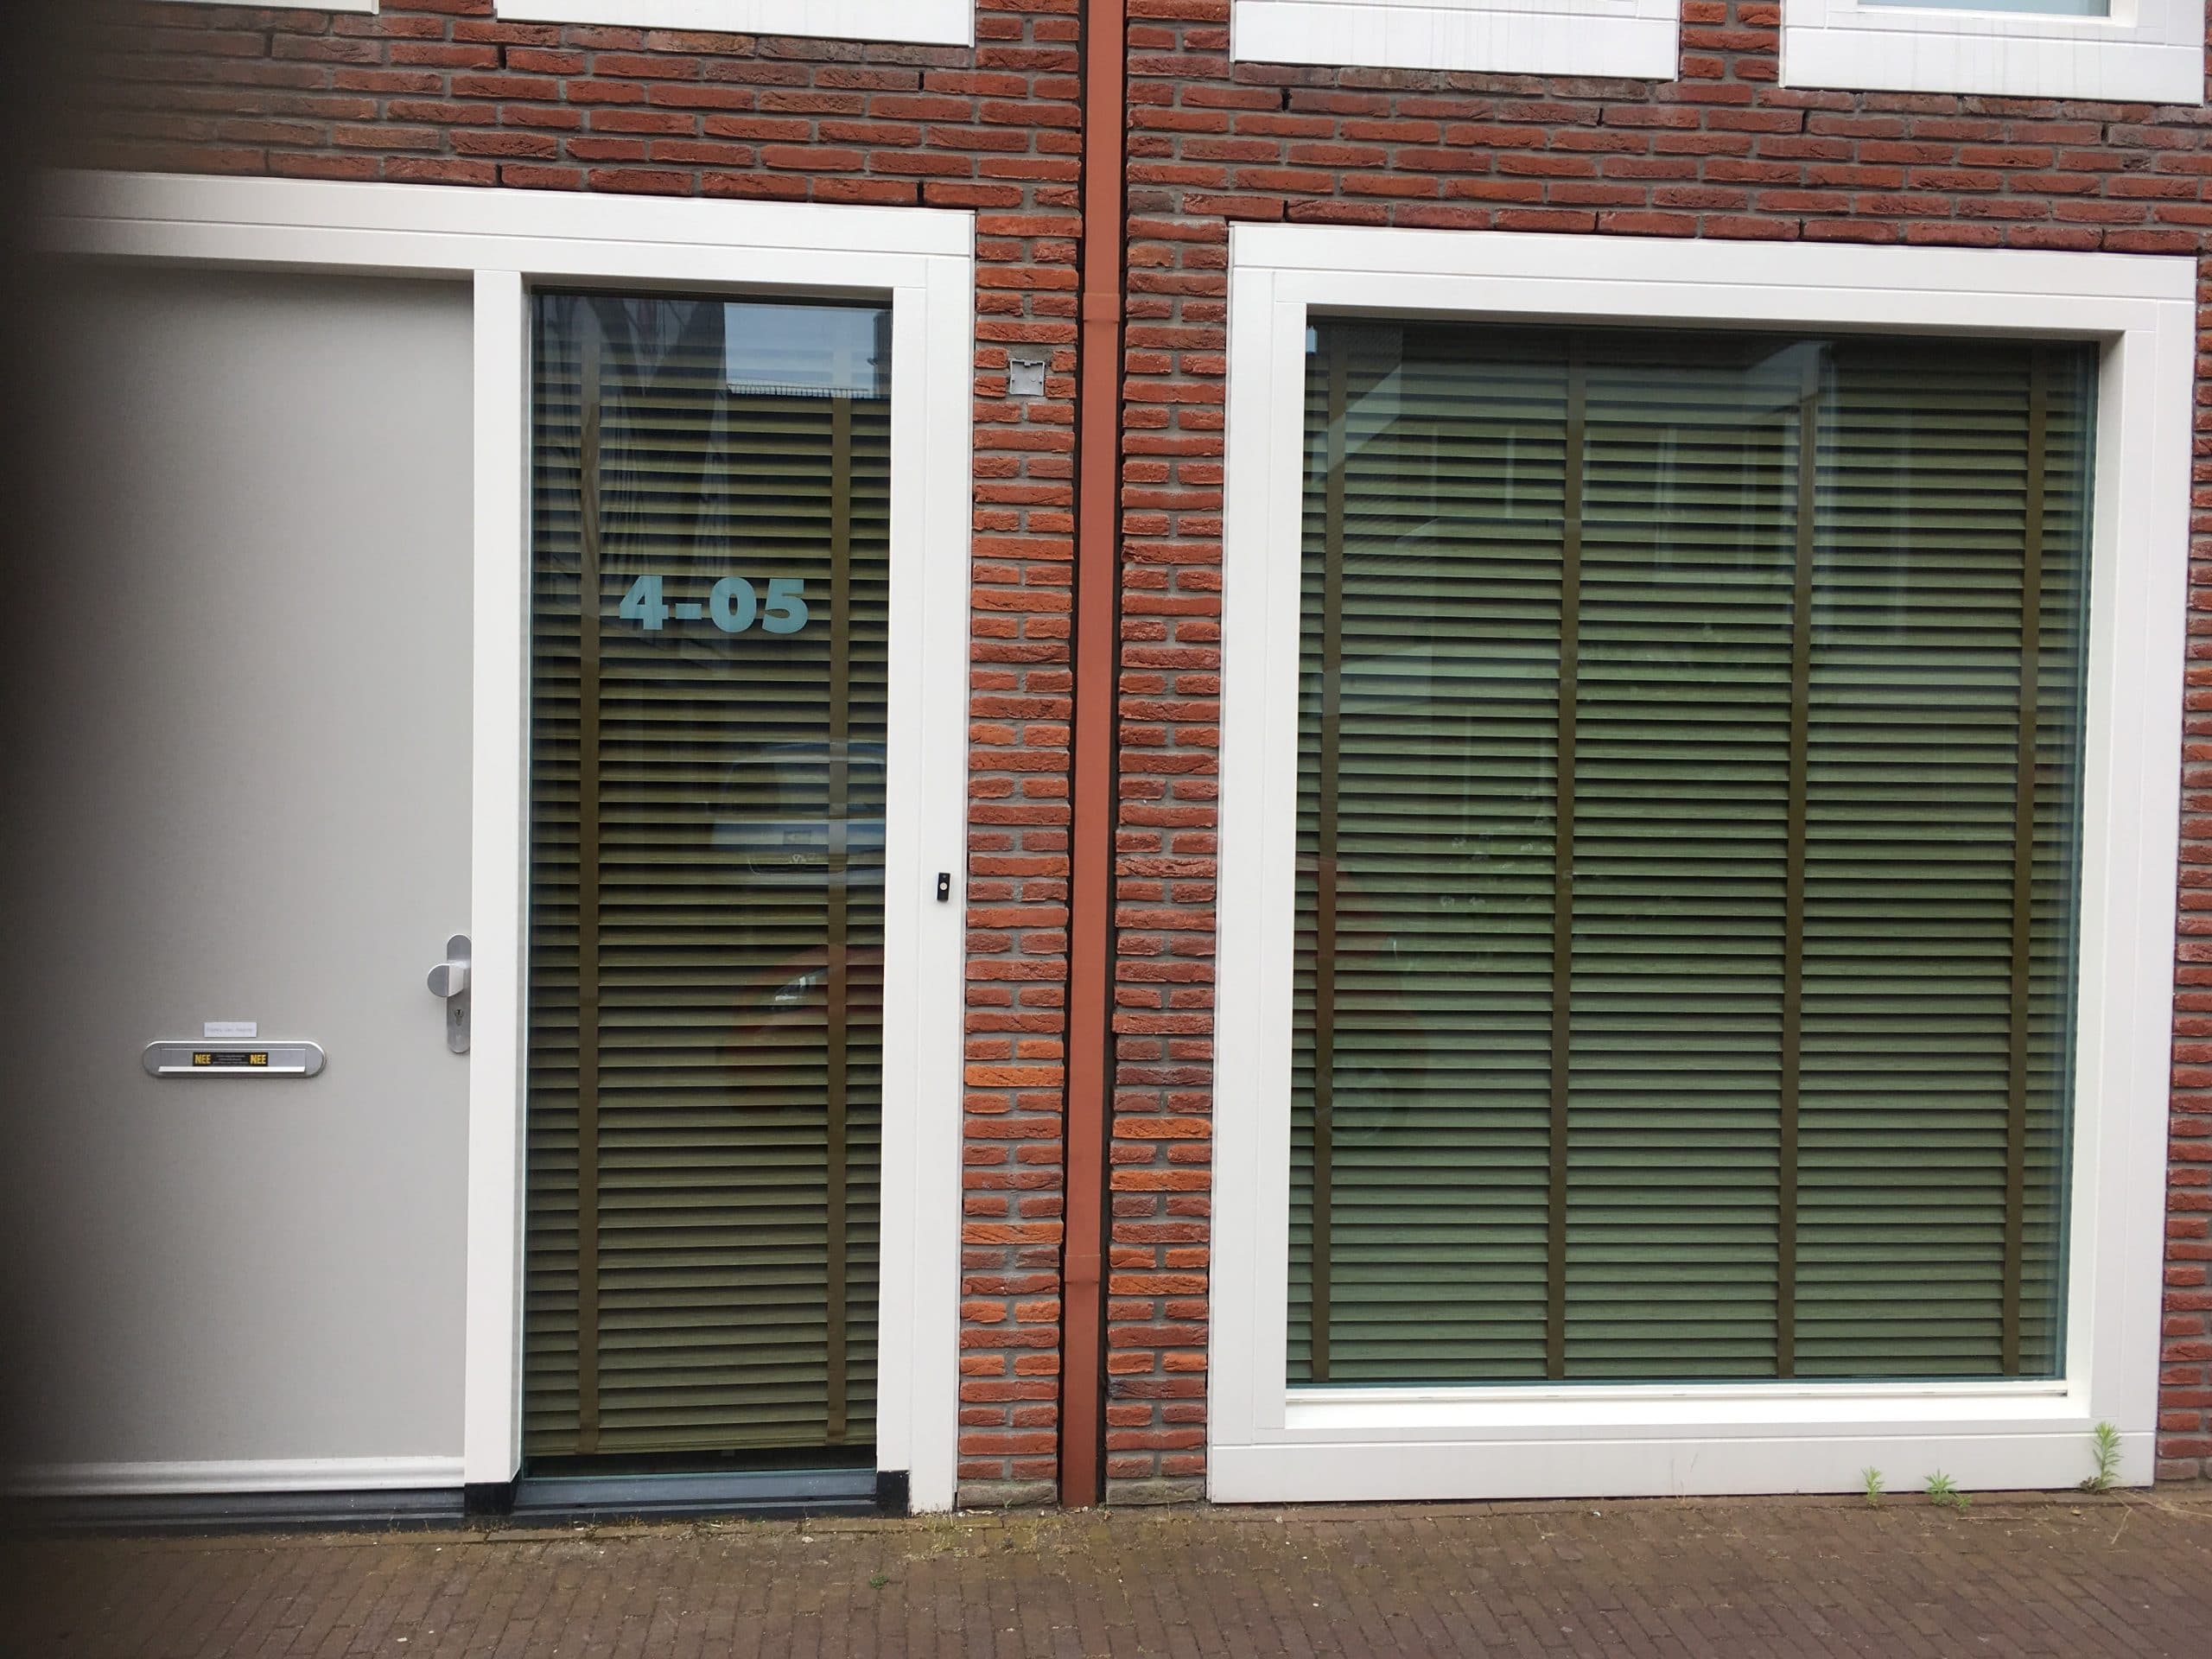 Utrecht - particuliere woning voorzien van OSX80 glasfolie. Weert tot 54% van de zonnewarmte en is praktisch niet zichtbaar